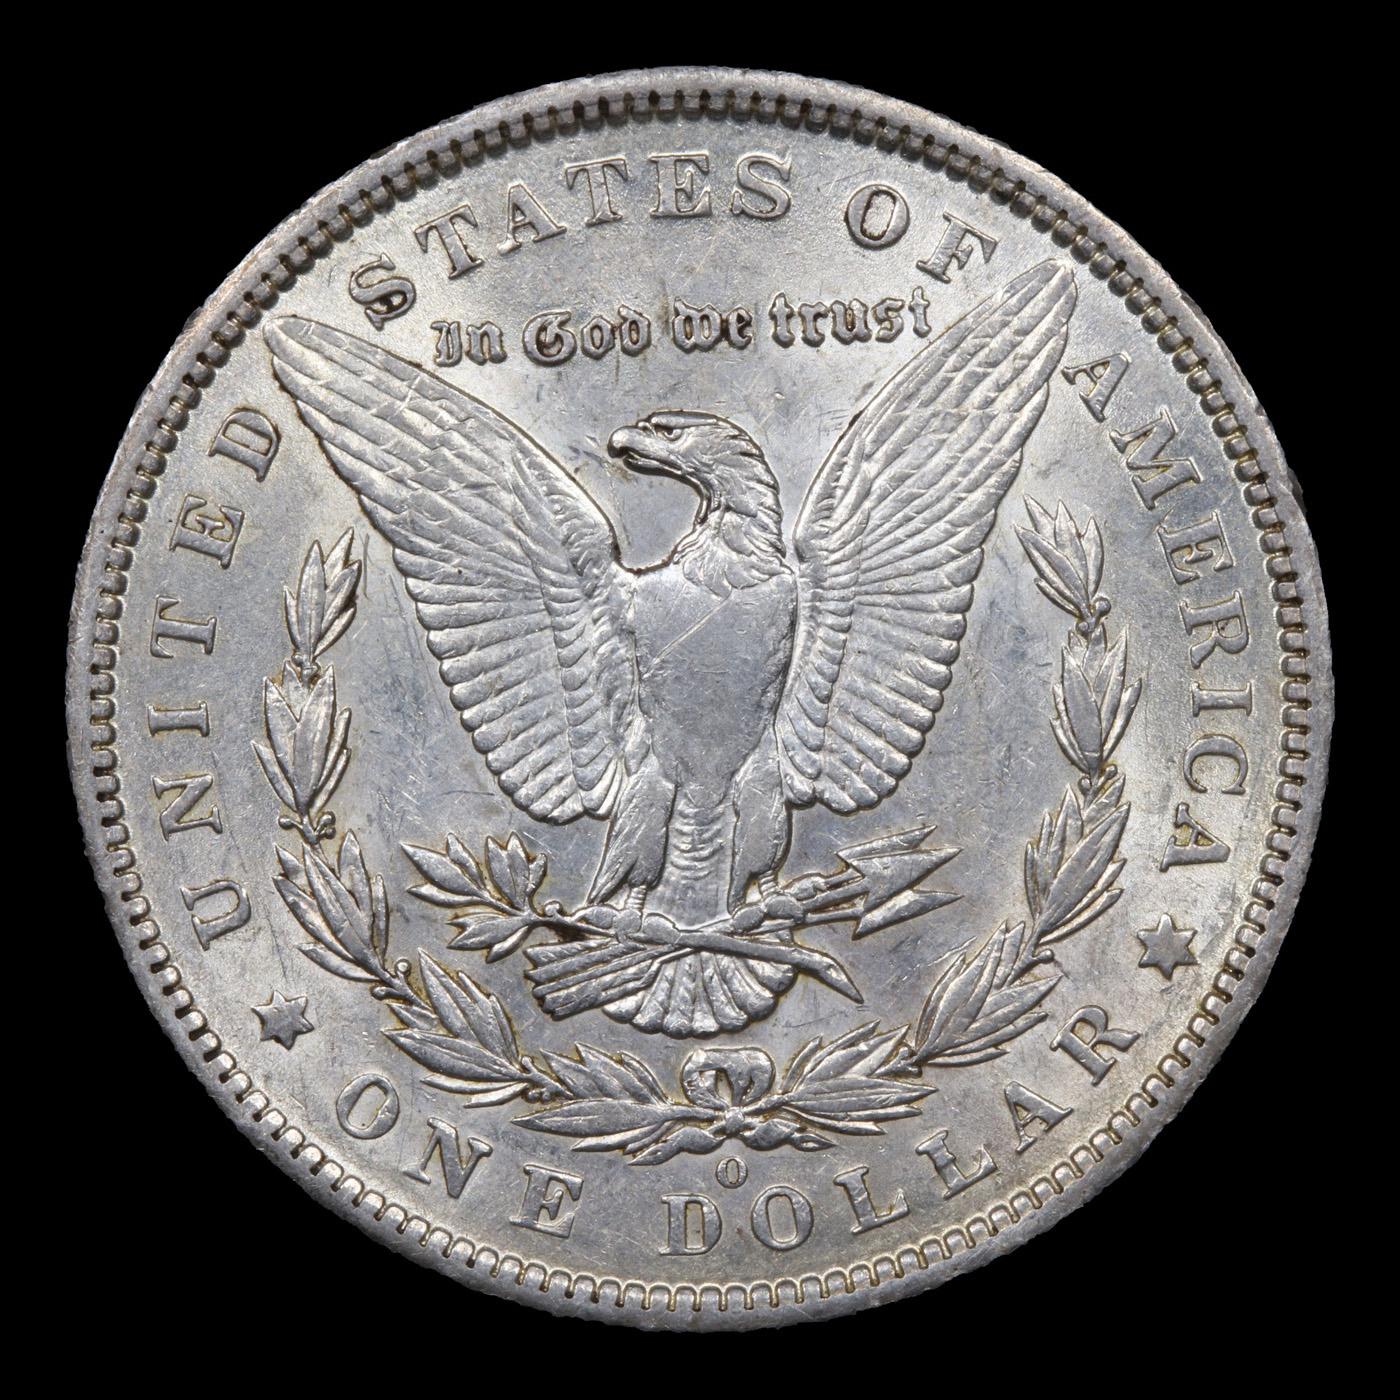 1894-o vam 4 Morgan Dollar $1 Grades Choice AU